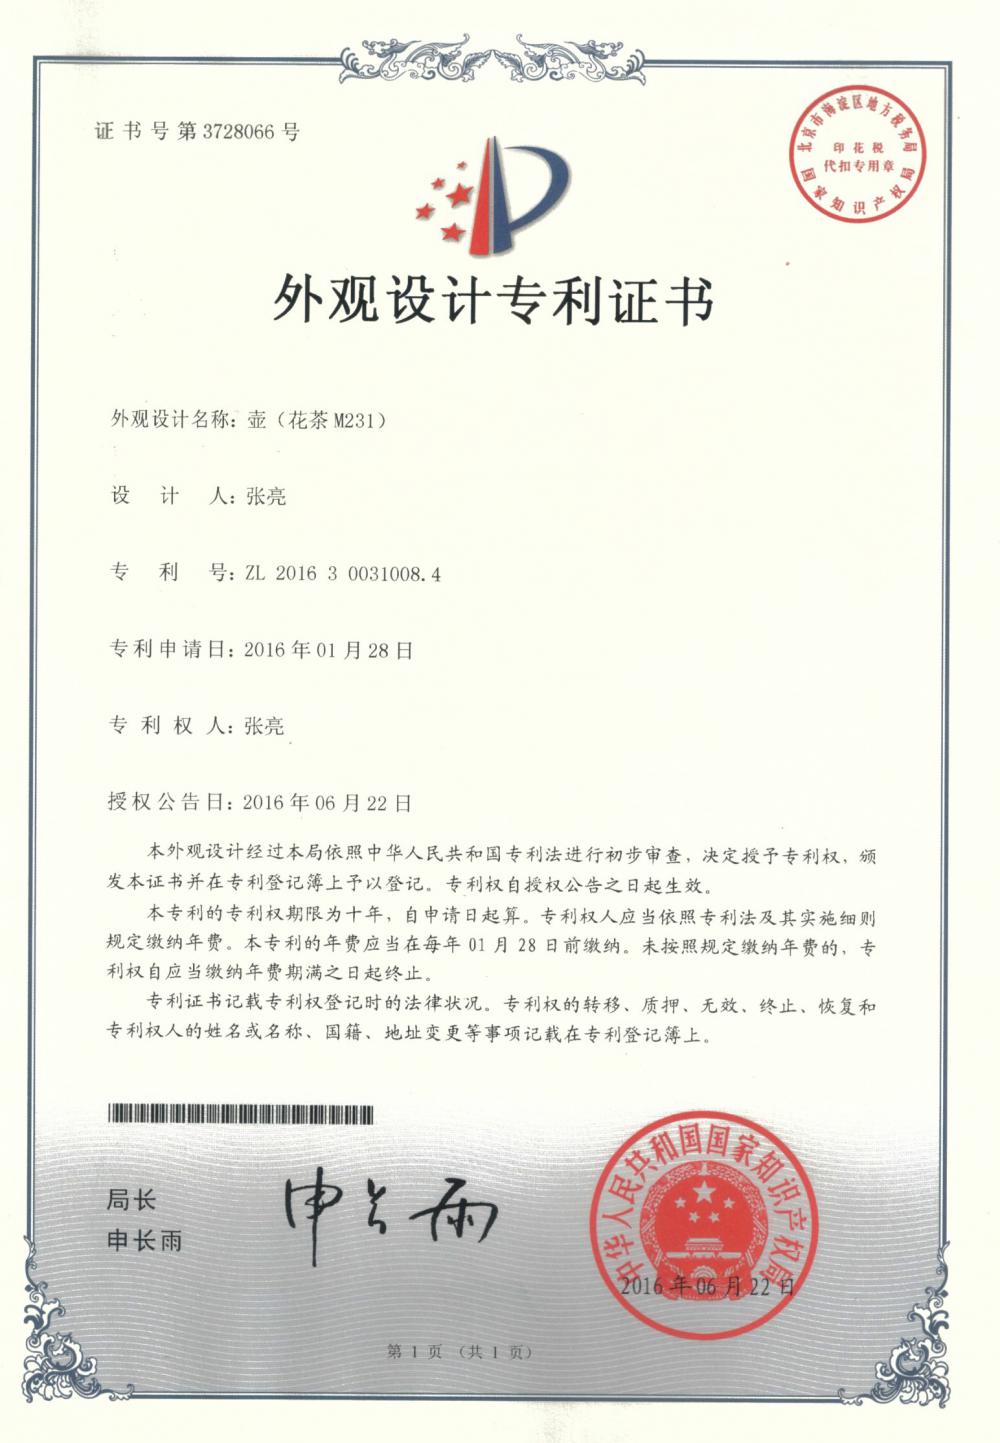 Appearance Design Patent Certificate(Tea Set)